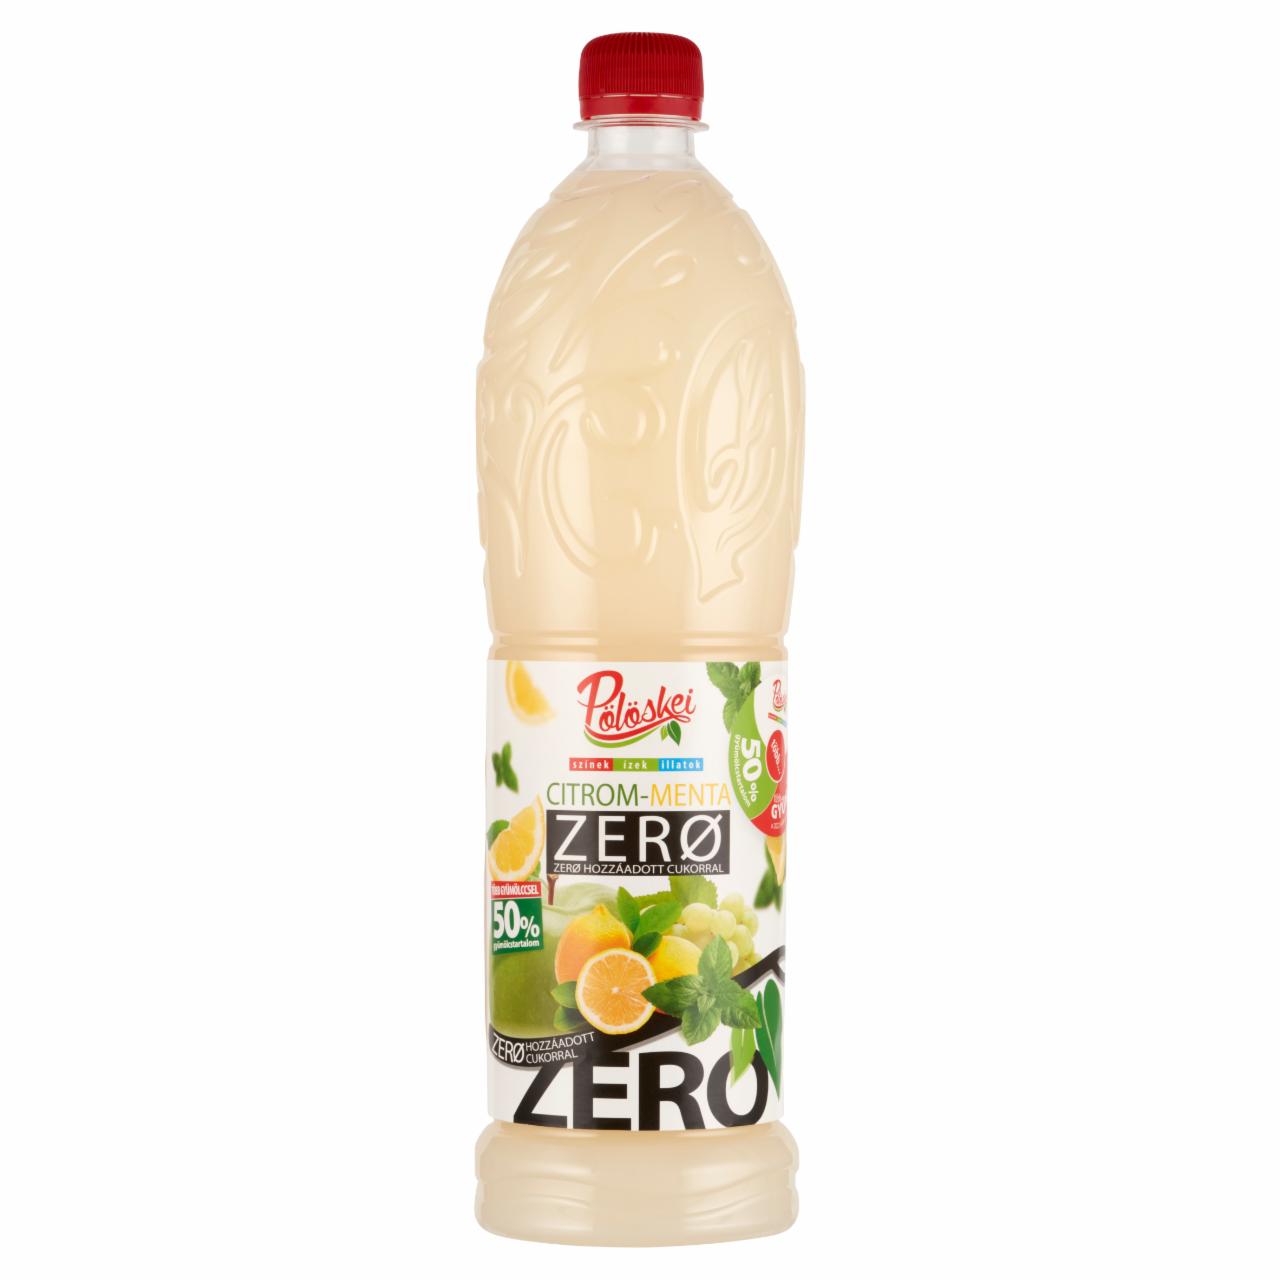 Képek - Pölöskei Zero citrom-menta ízű szörp édesítőszerekkel 1 l